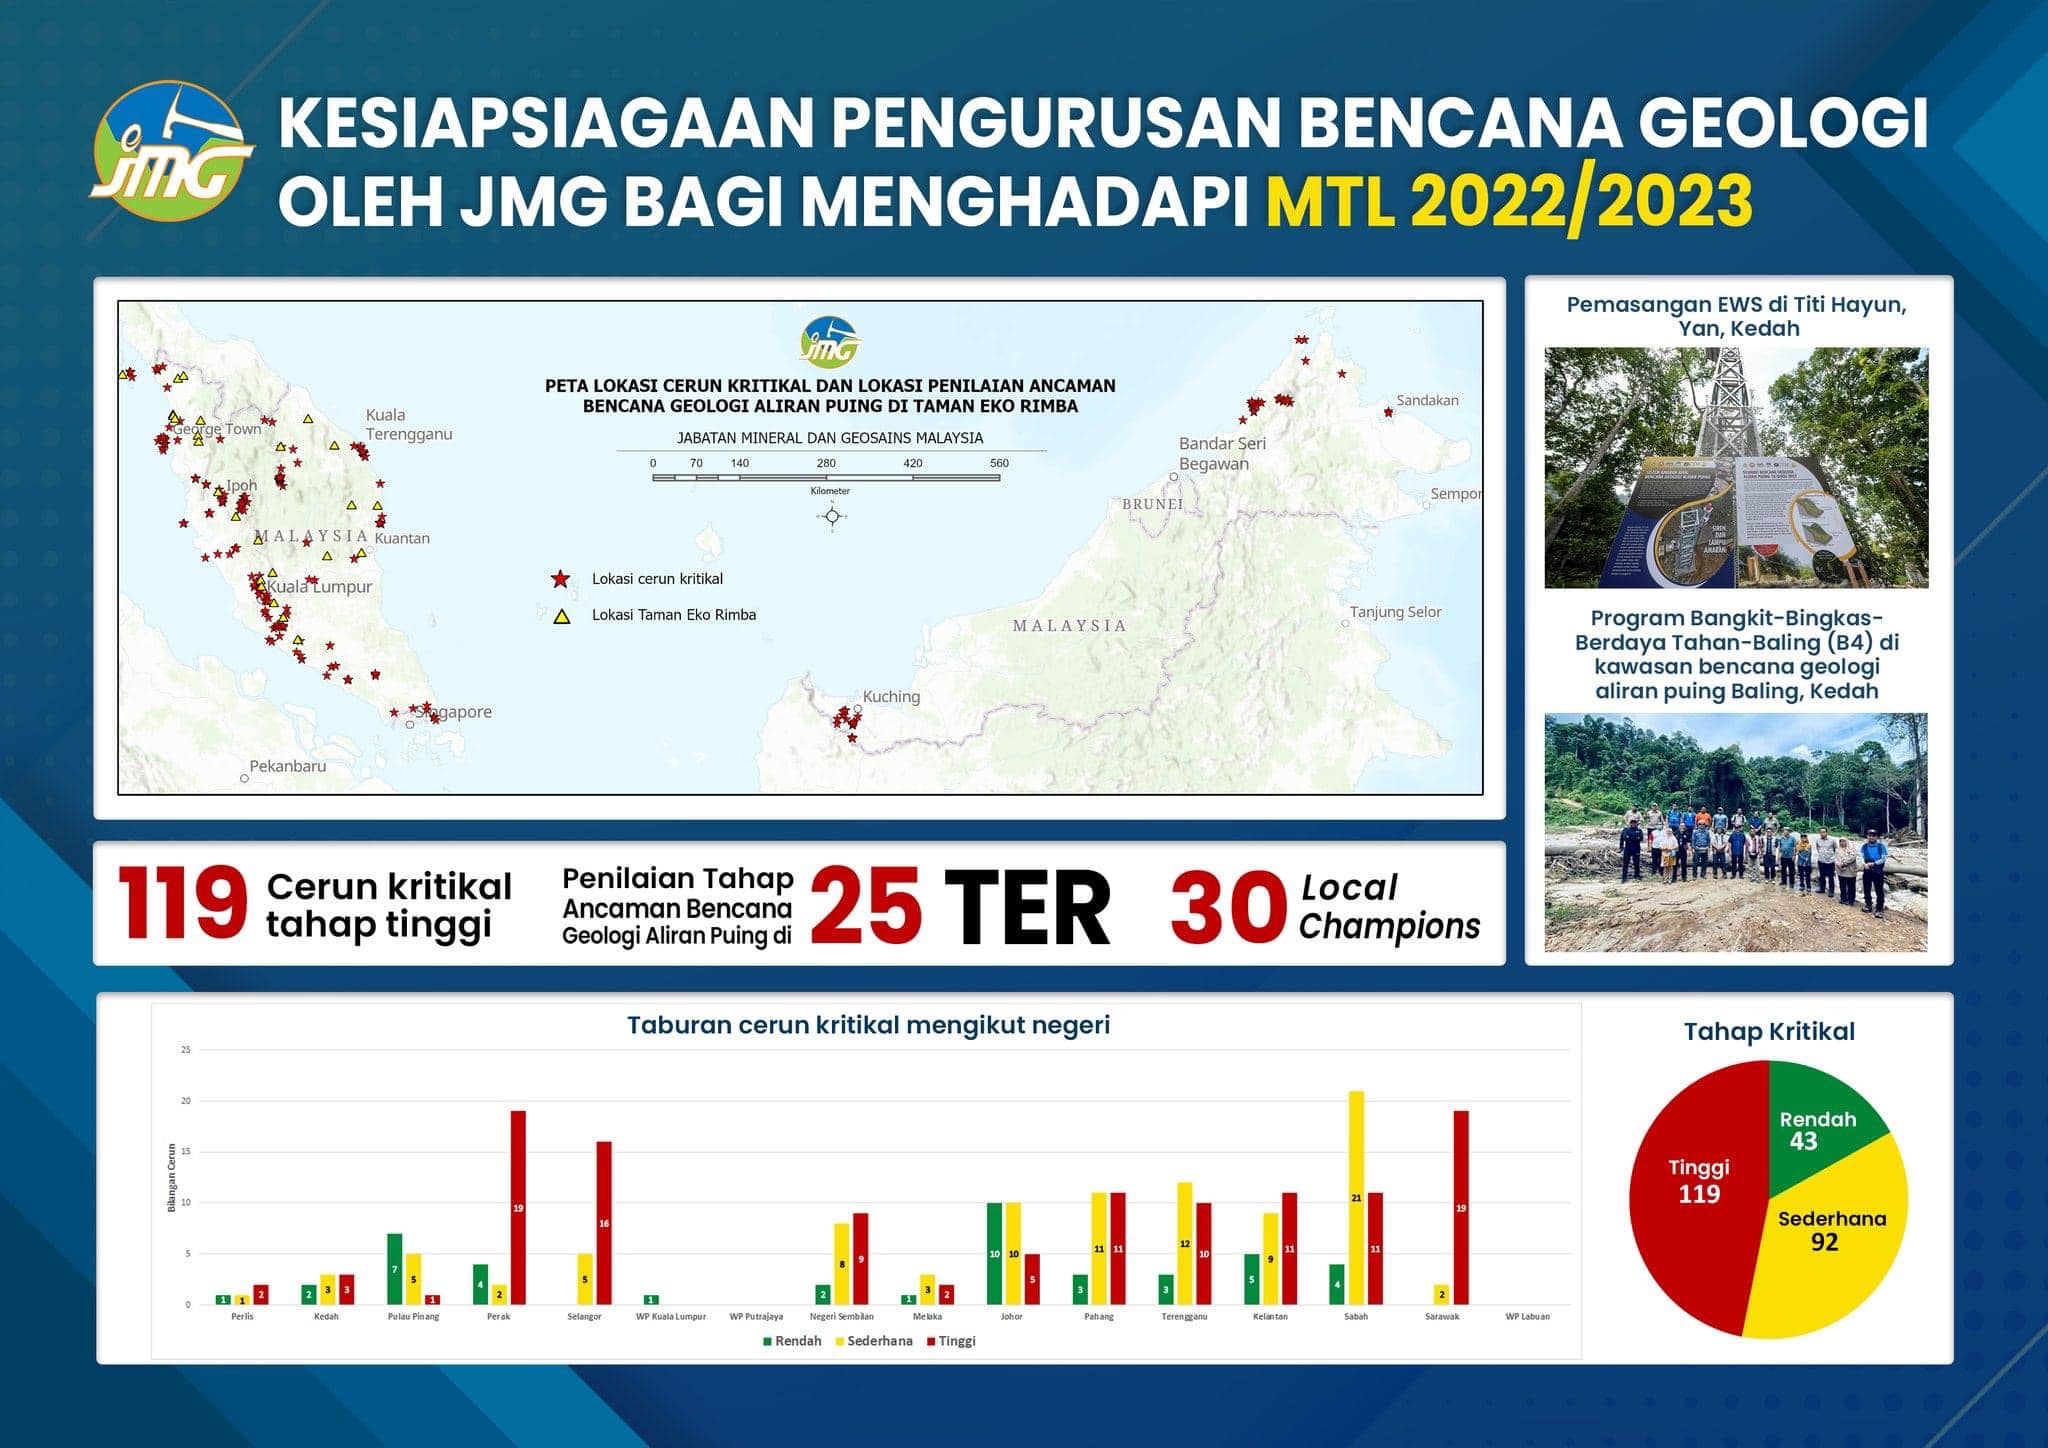 Kesiapsiagaan Pengurusan Bencana Geologi Oleh JMG Bagi Menghadapi Monsun Timur Laut, MTL 2022/2023 